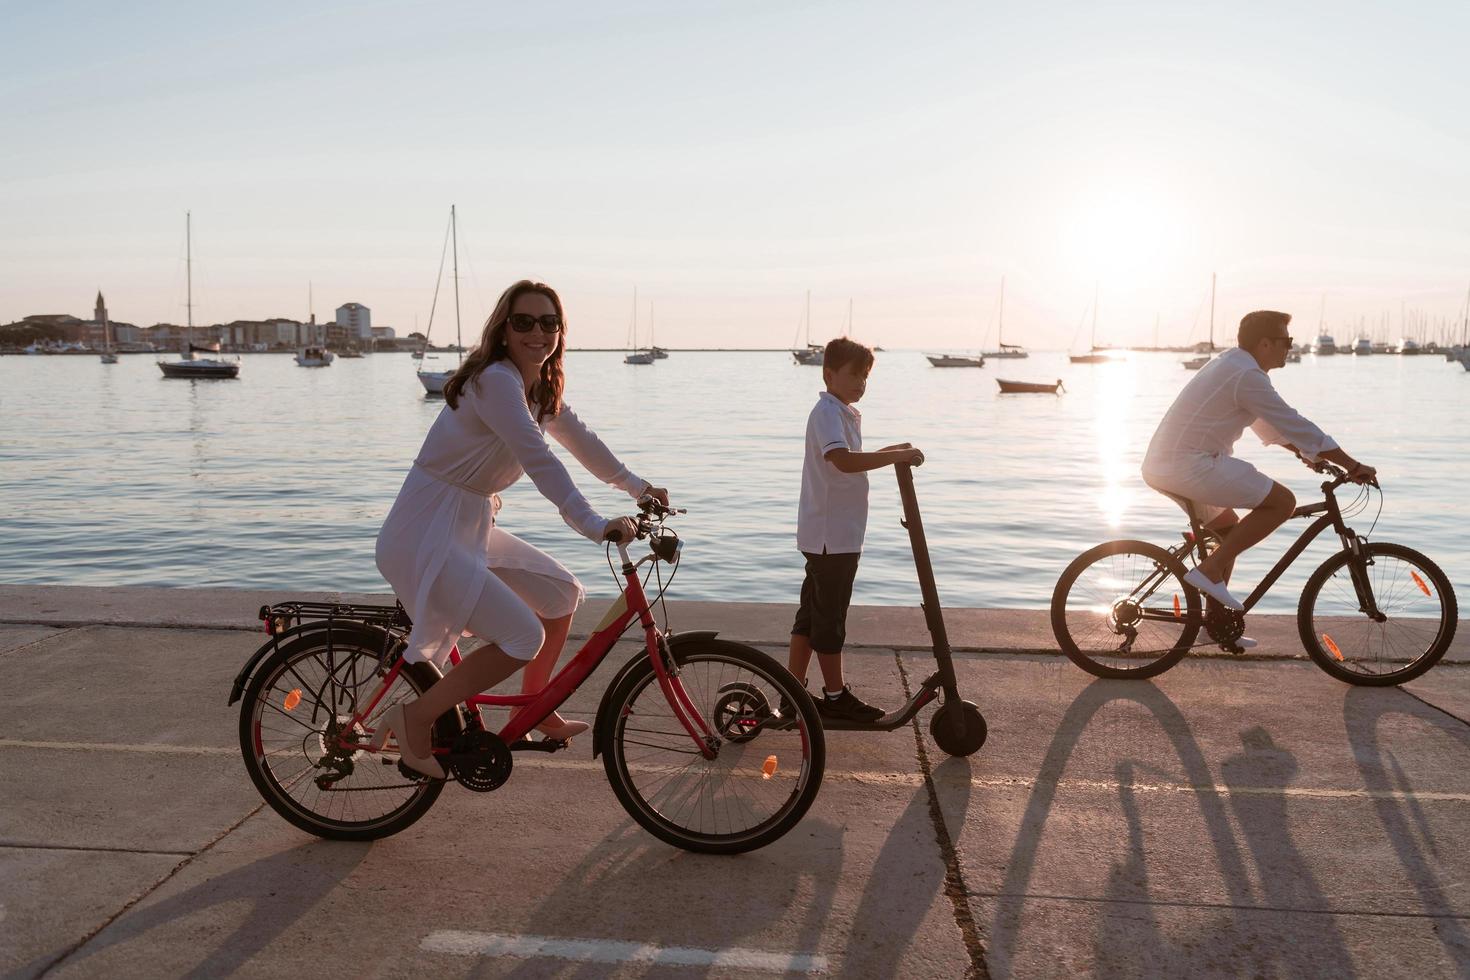 gelukkig familie genieten van een mooi ochtend- door de zee samen, ouders rijden een fiets en hun zoon rijden een elektrisch scooter. selectief focus foto